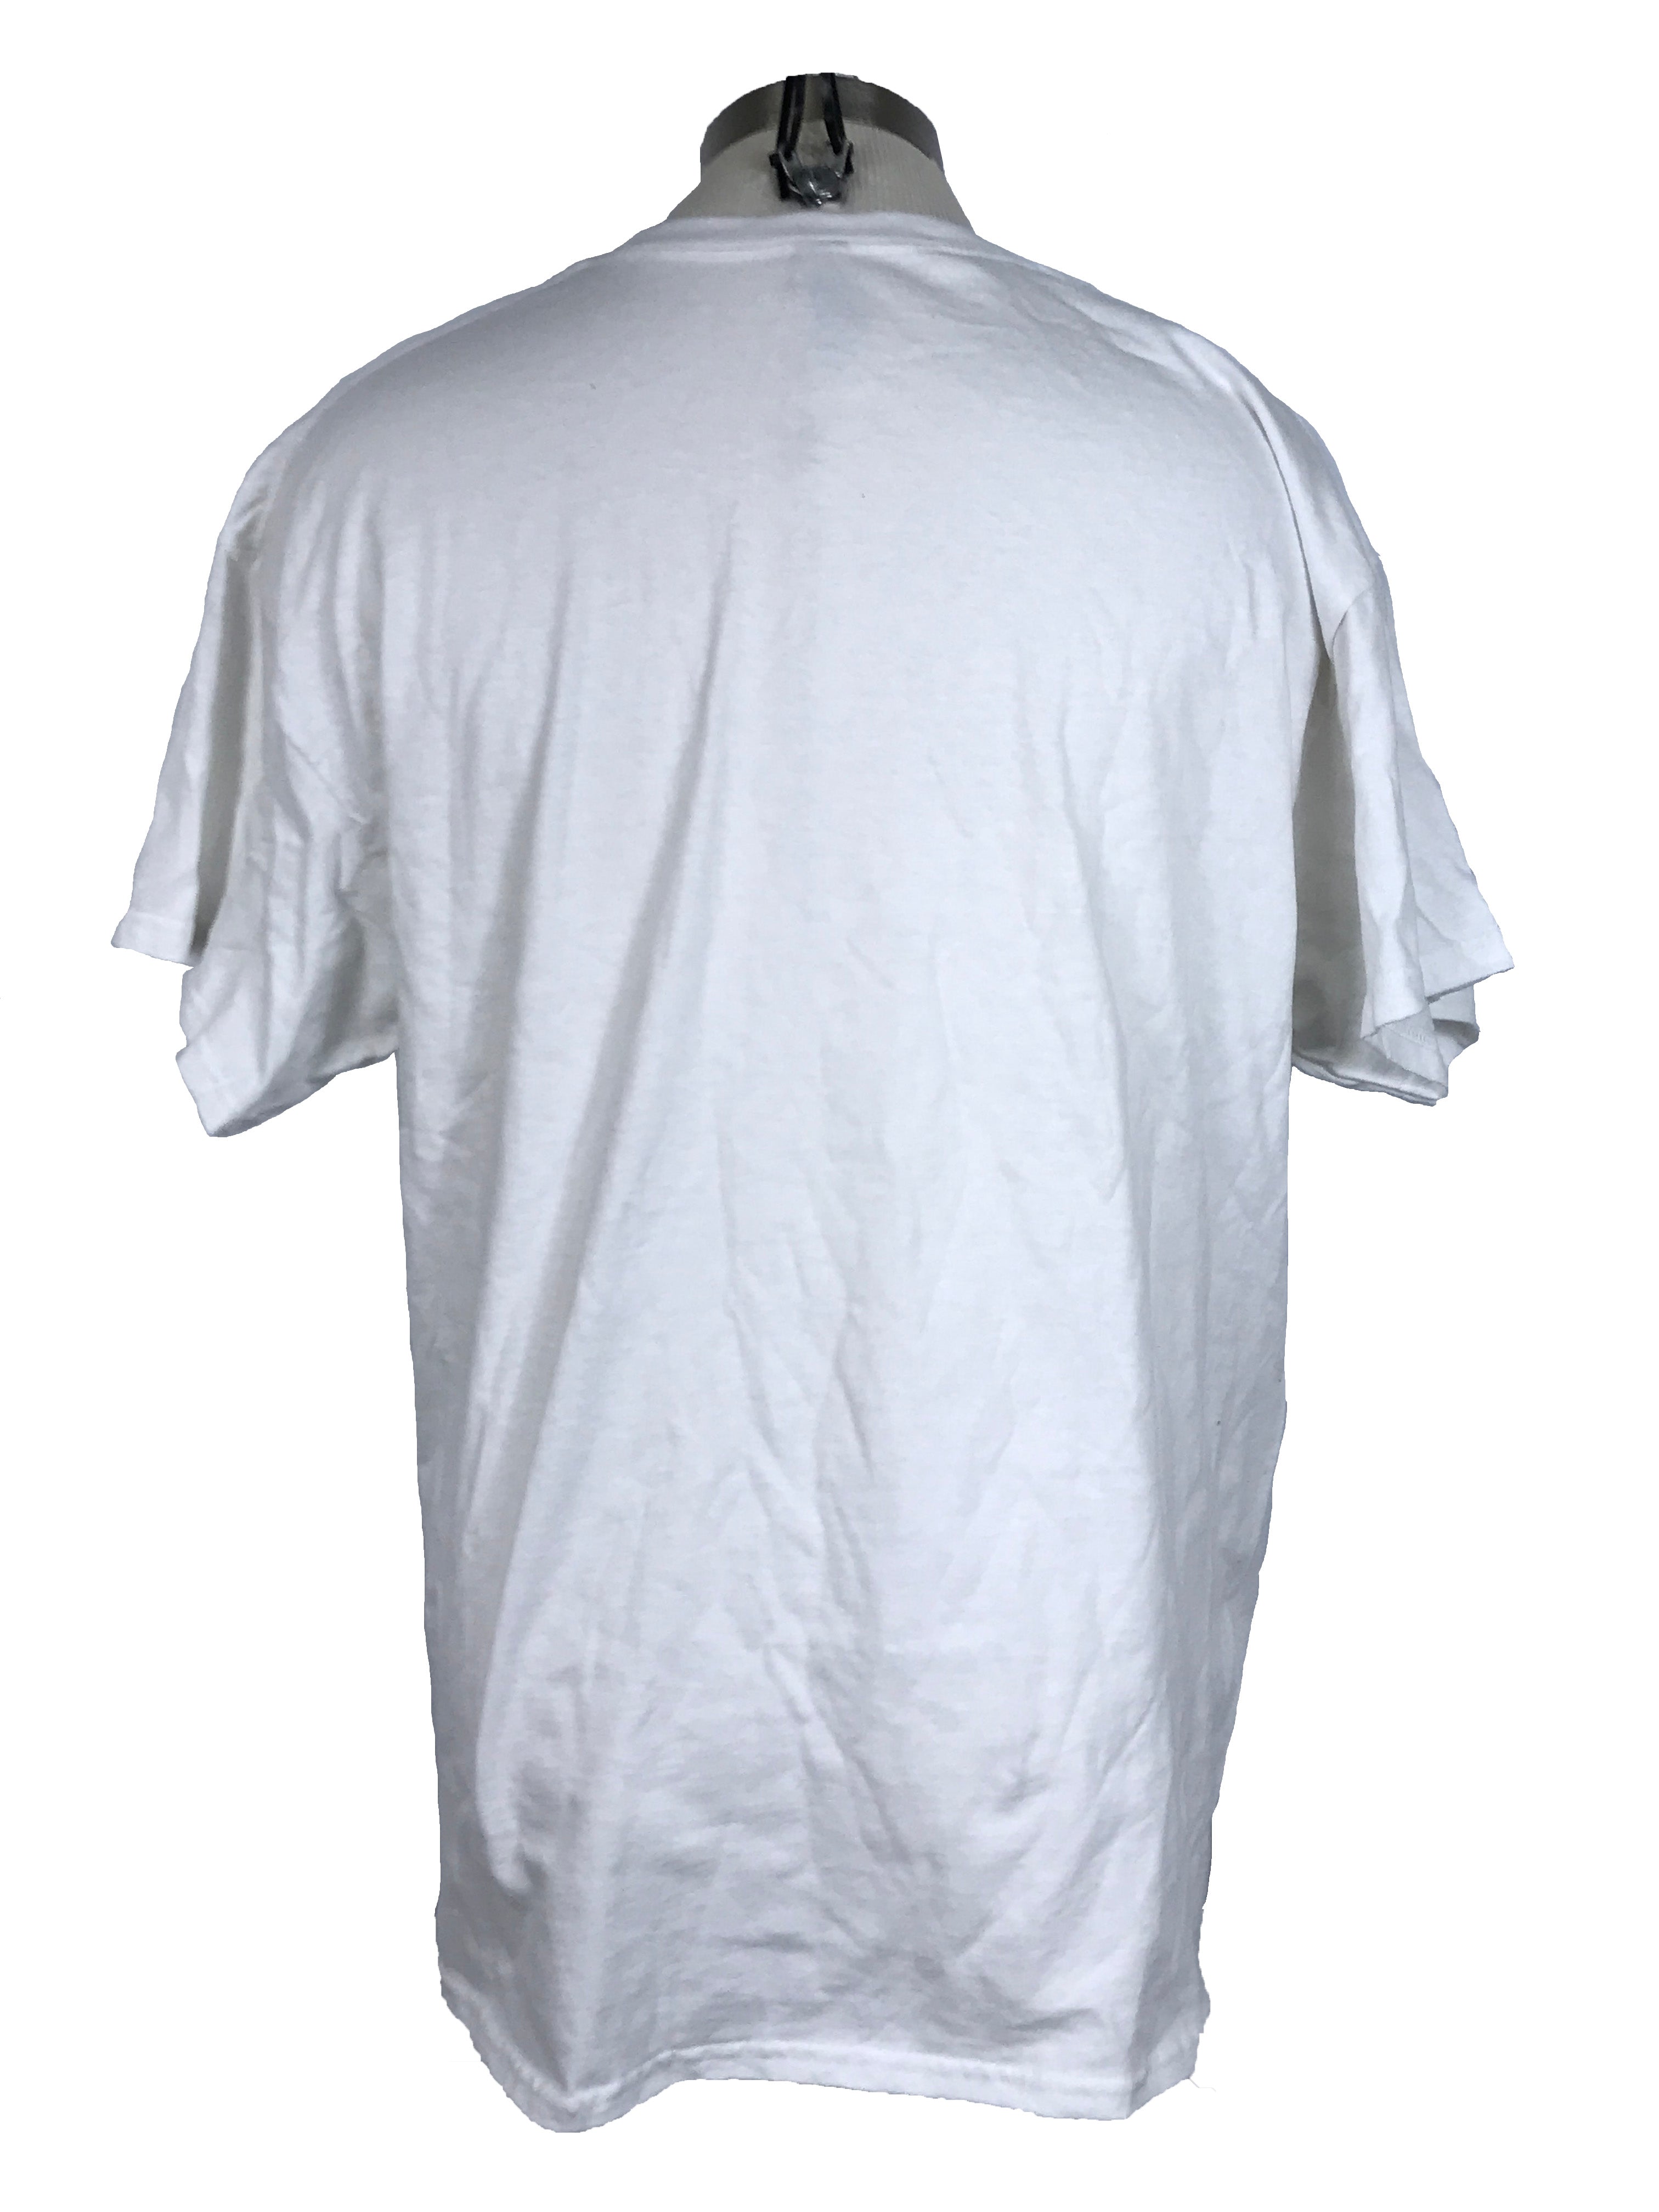 White MSU "Spartans Will" T-Shirt Unisex Size XL